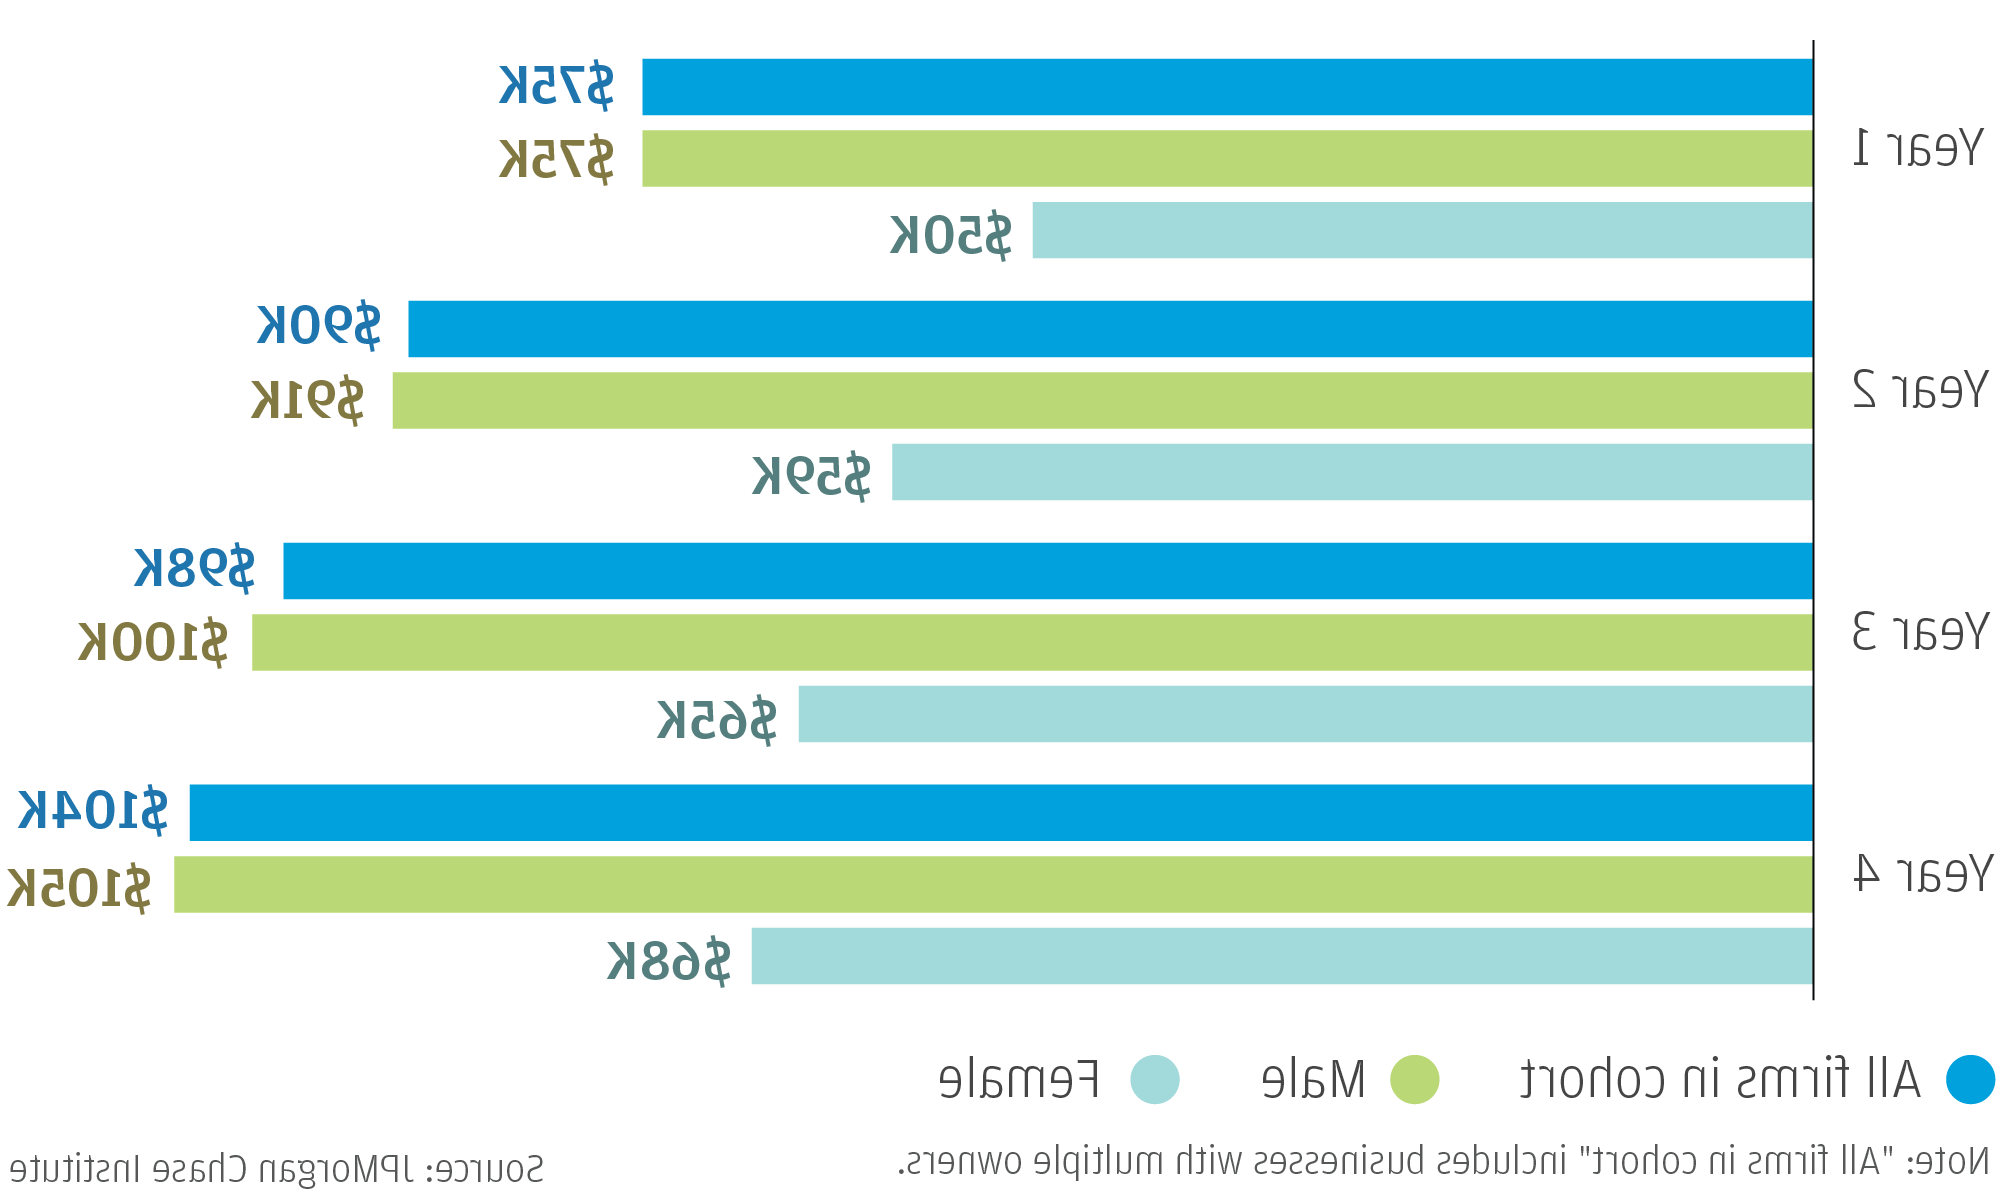 图表描述了2013年中小企业按性别和年份划分的收入中位数